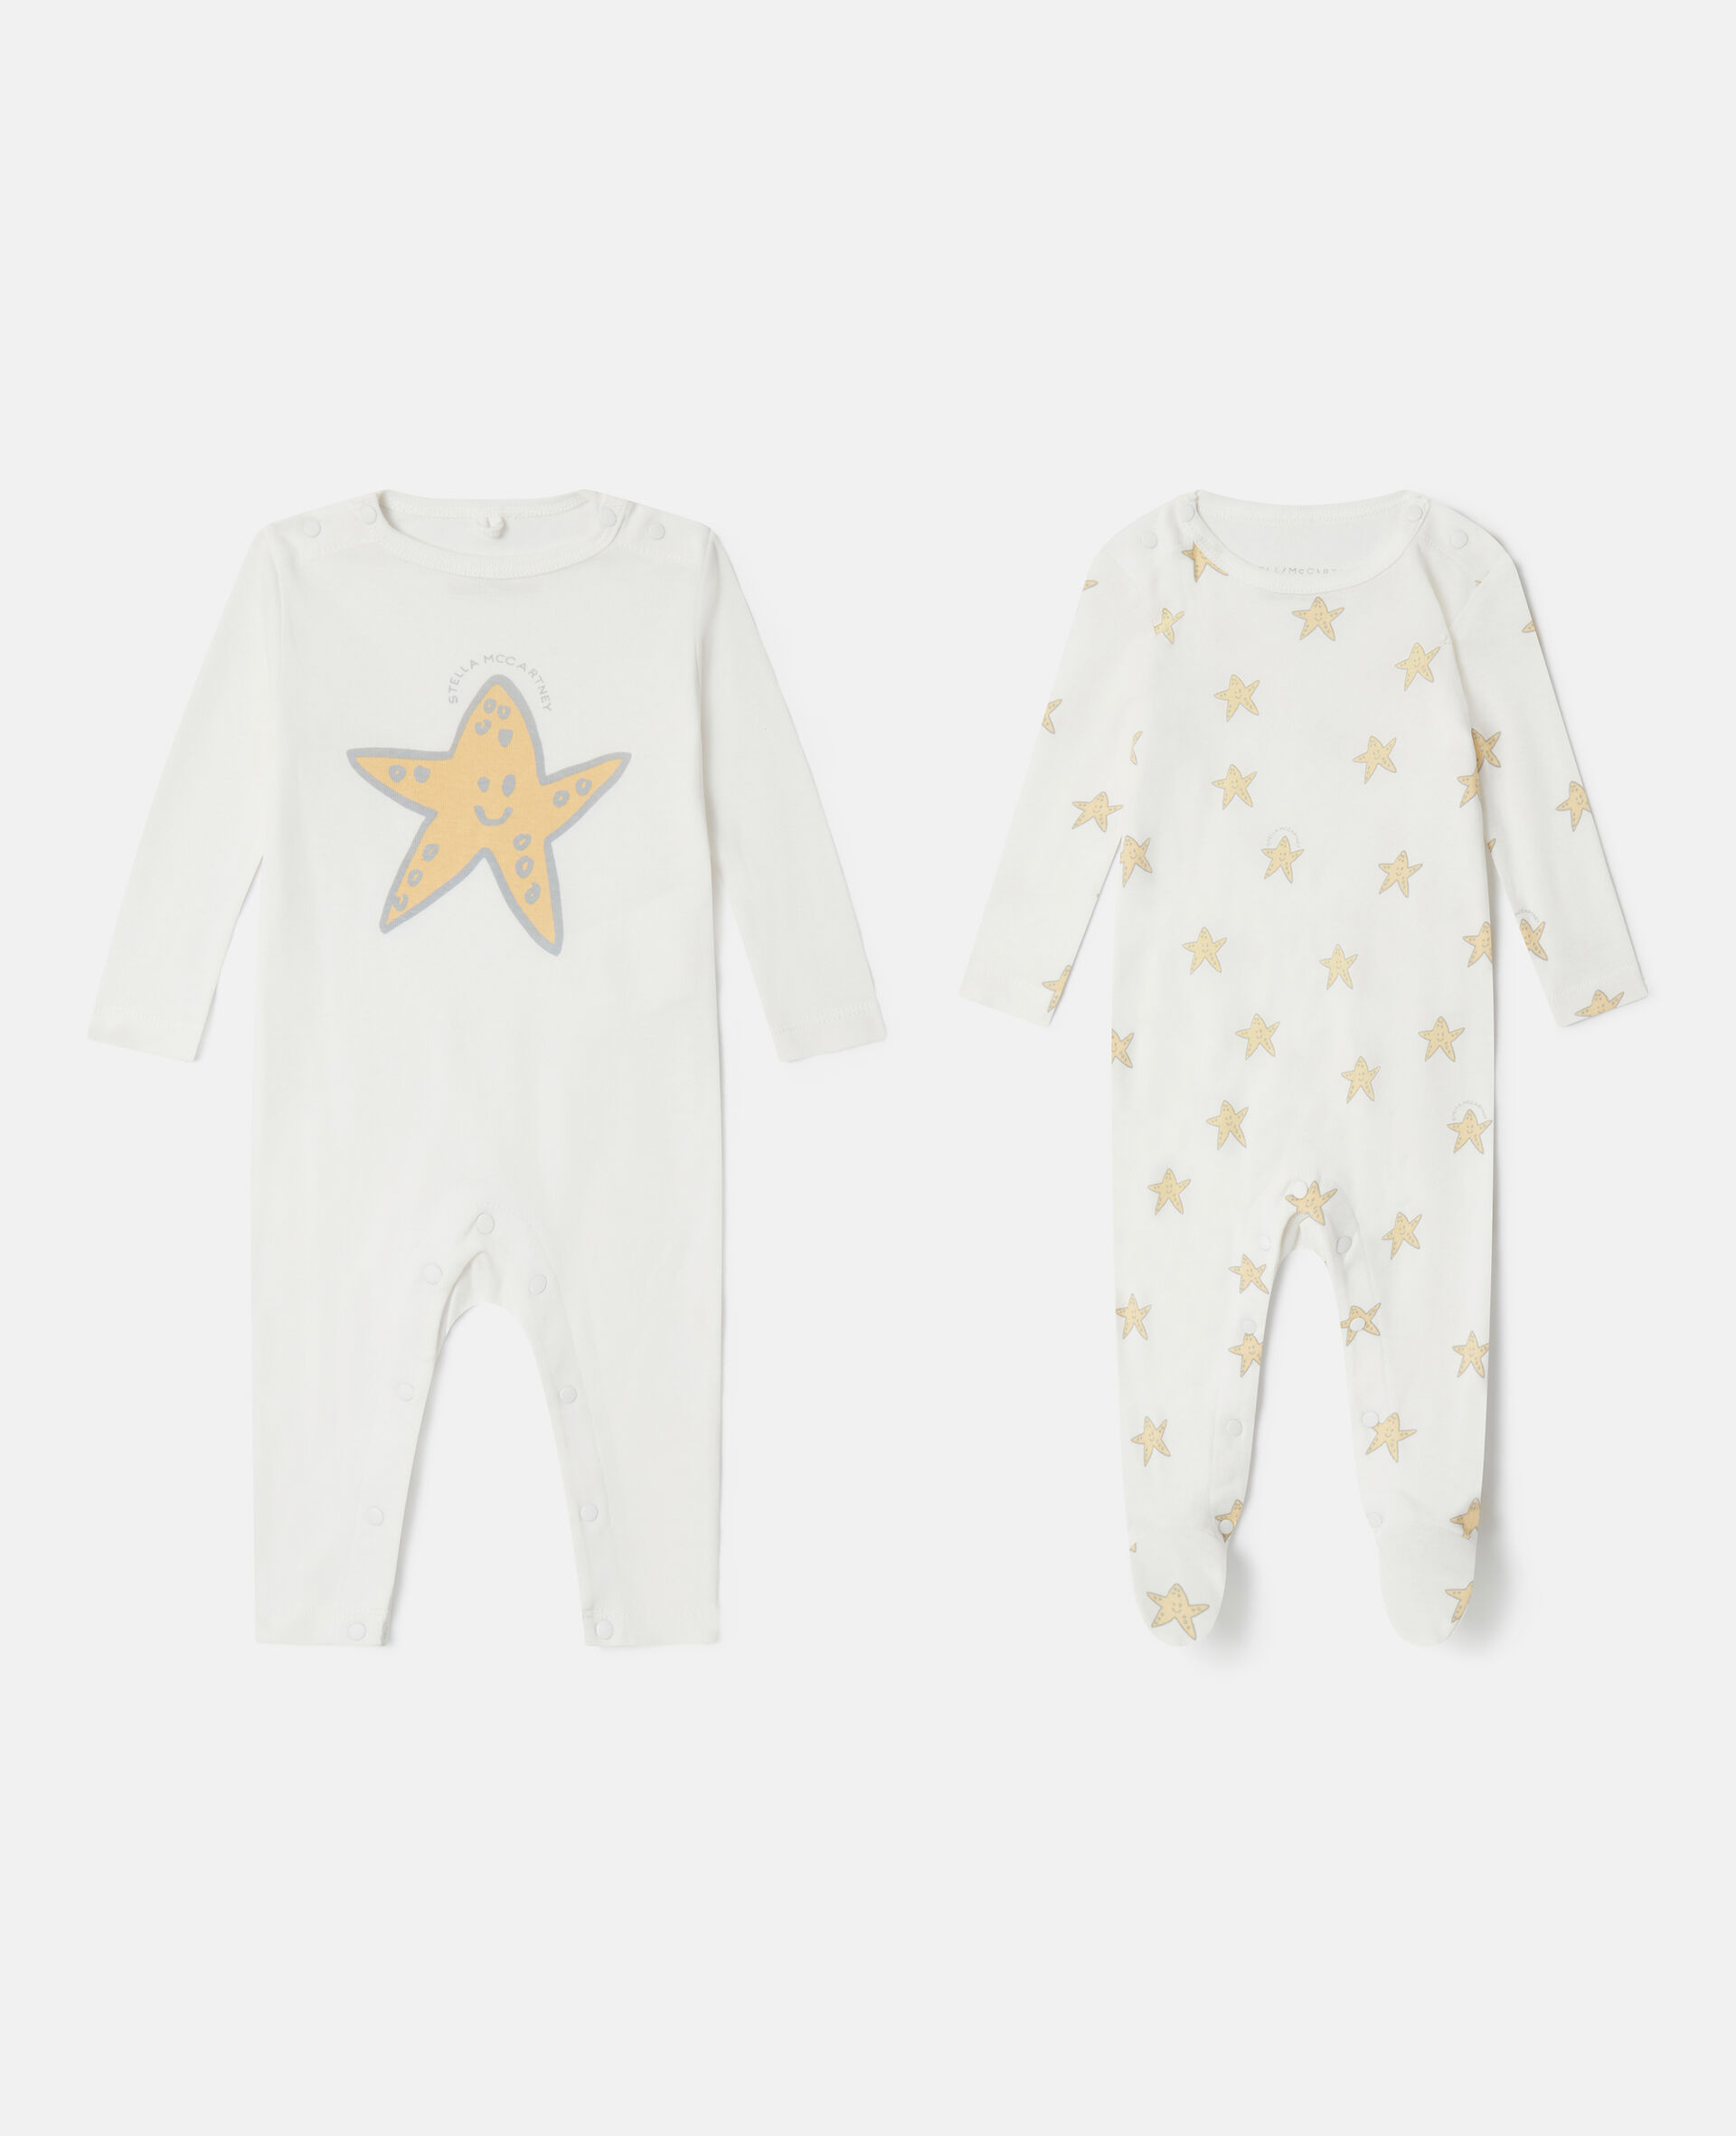 Smiling Stella Star Print Sleepsuit Set-멀티컬러-large image number 0